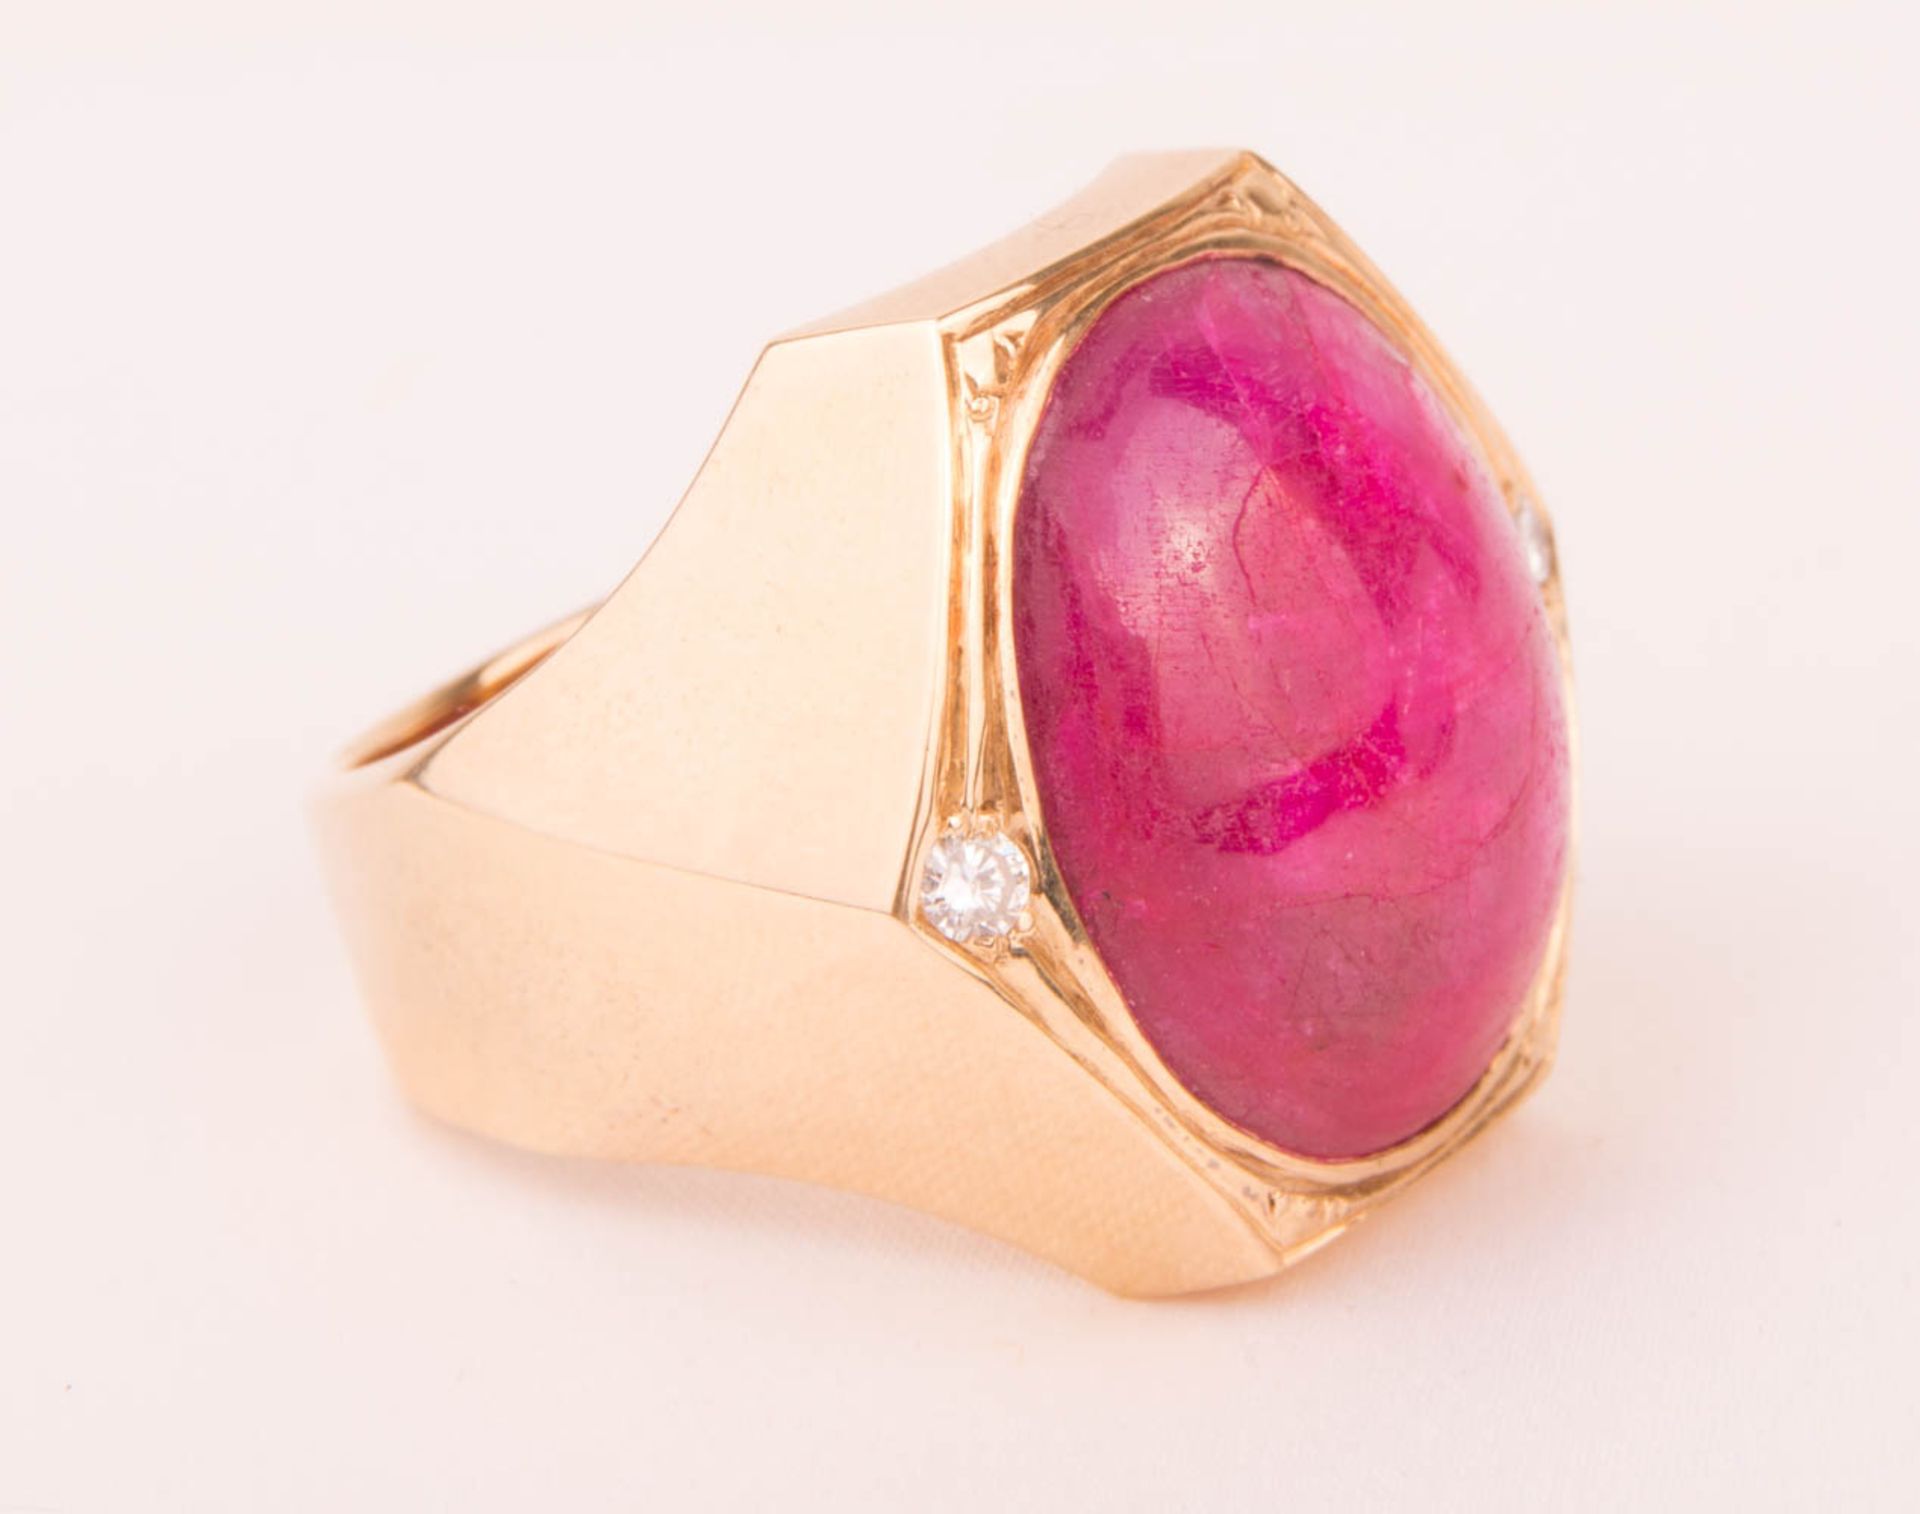 Beeindruckend breiter Ring mit großem Rubin und Diamanten, 585er Gelbgold.